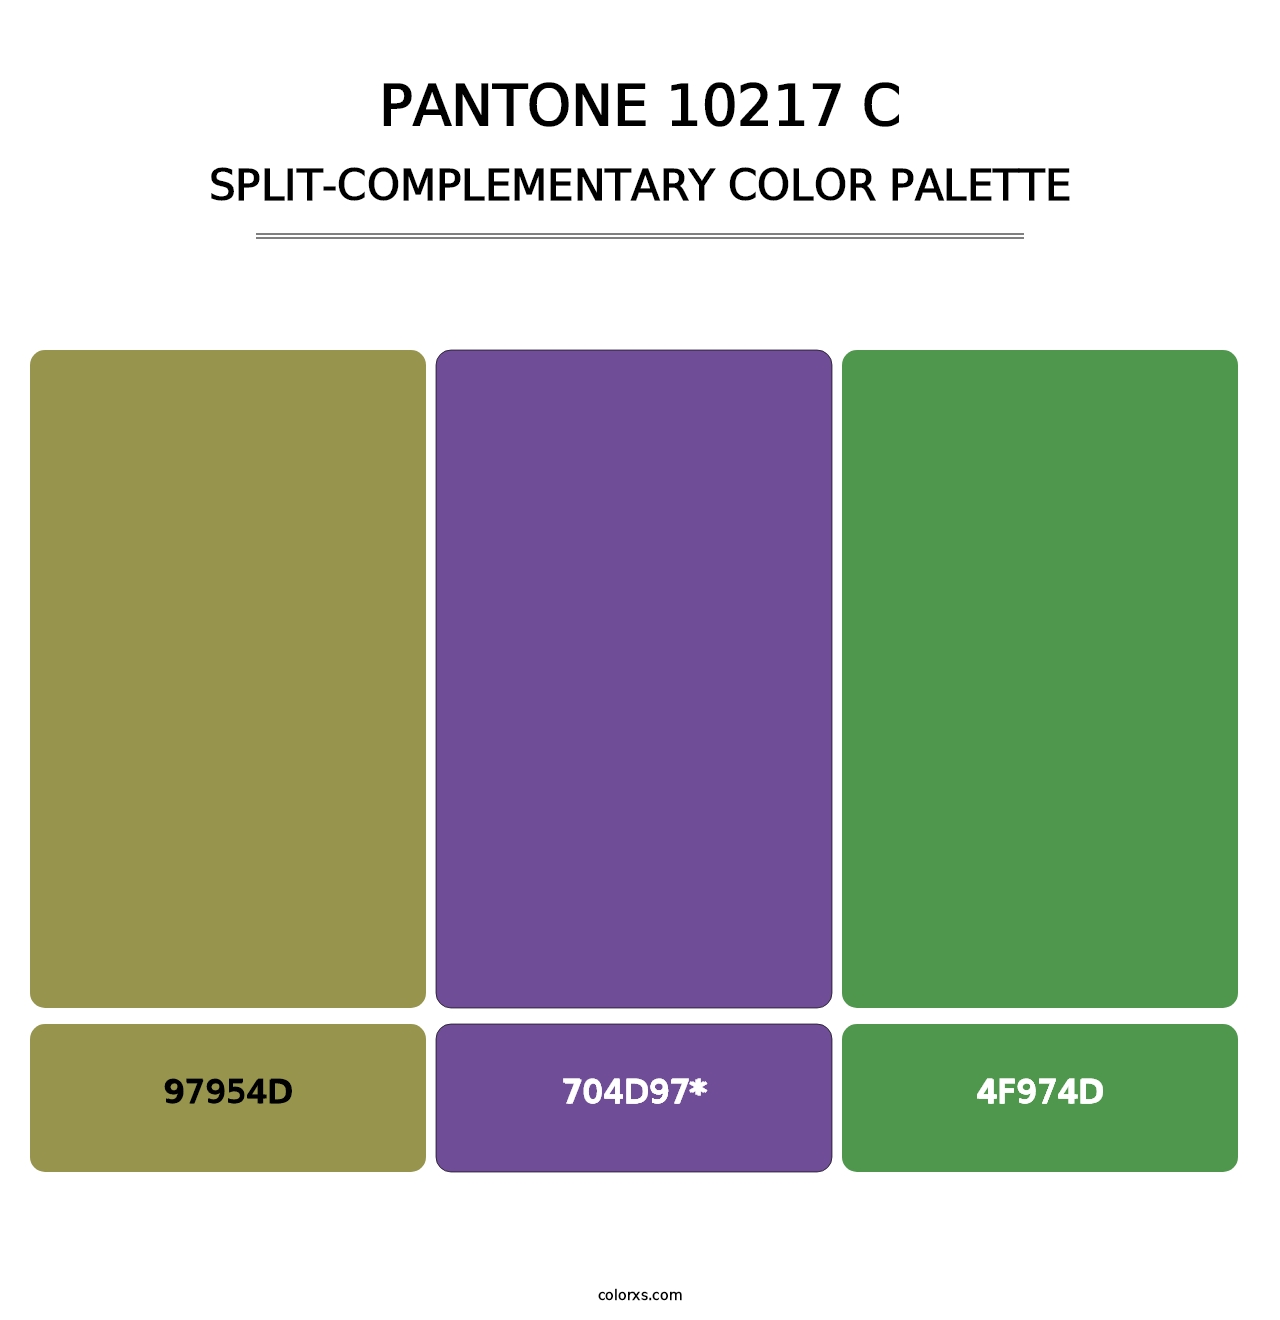 PANTONE 10217 C - Split-Complementary Color Palette